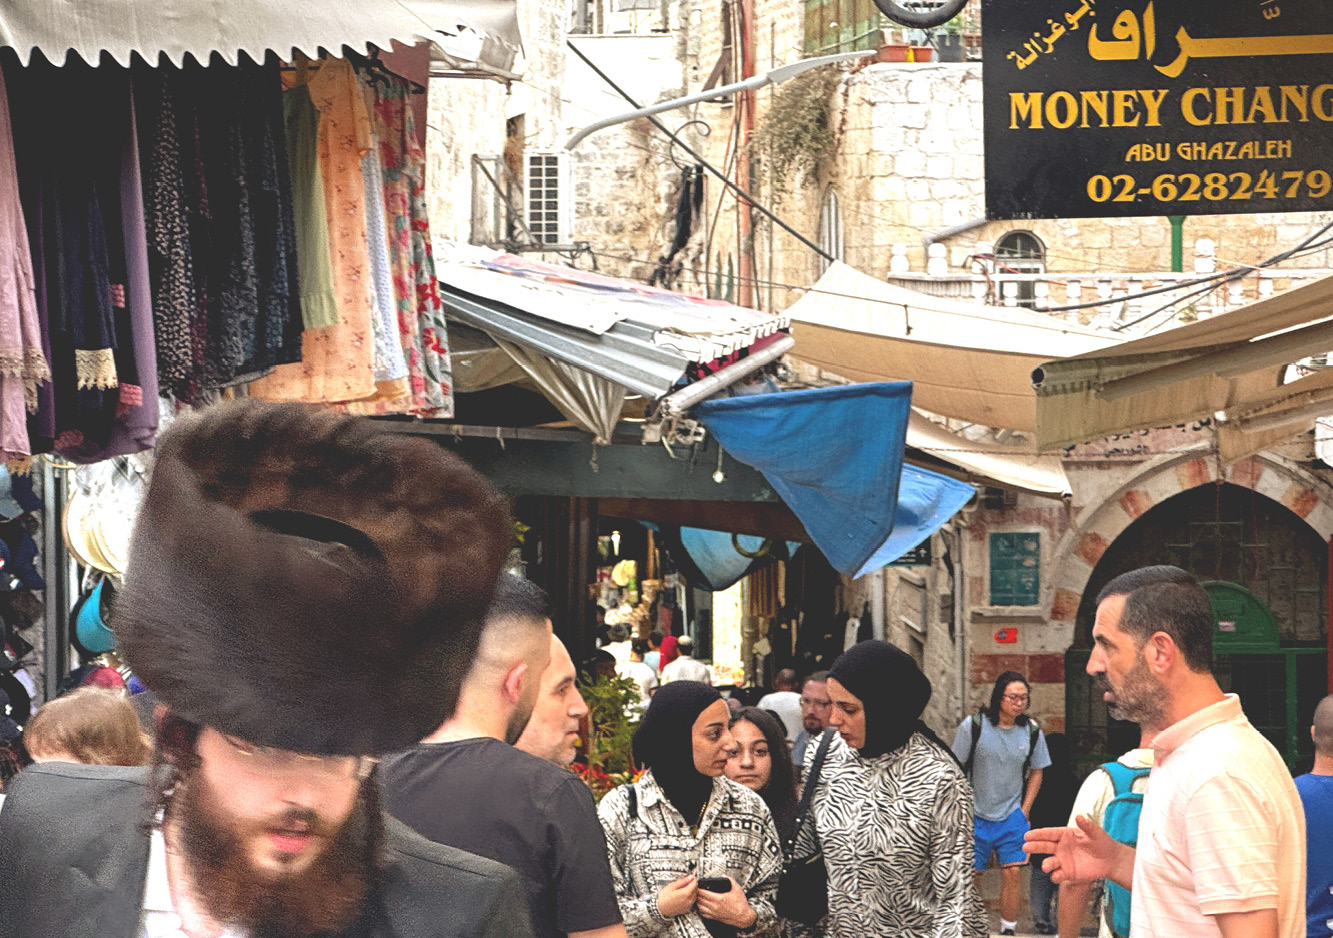 A crowded street near Old City Jerusalem’s Damascus Gate.